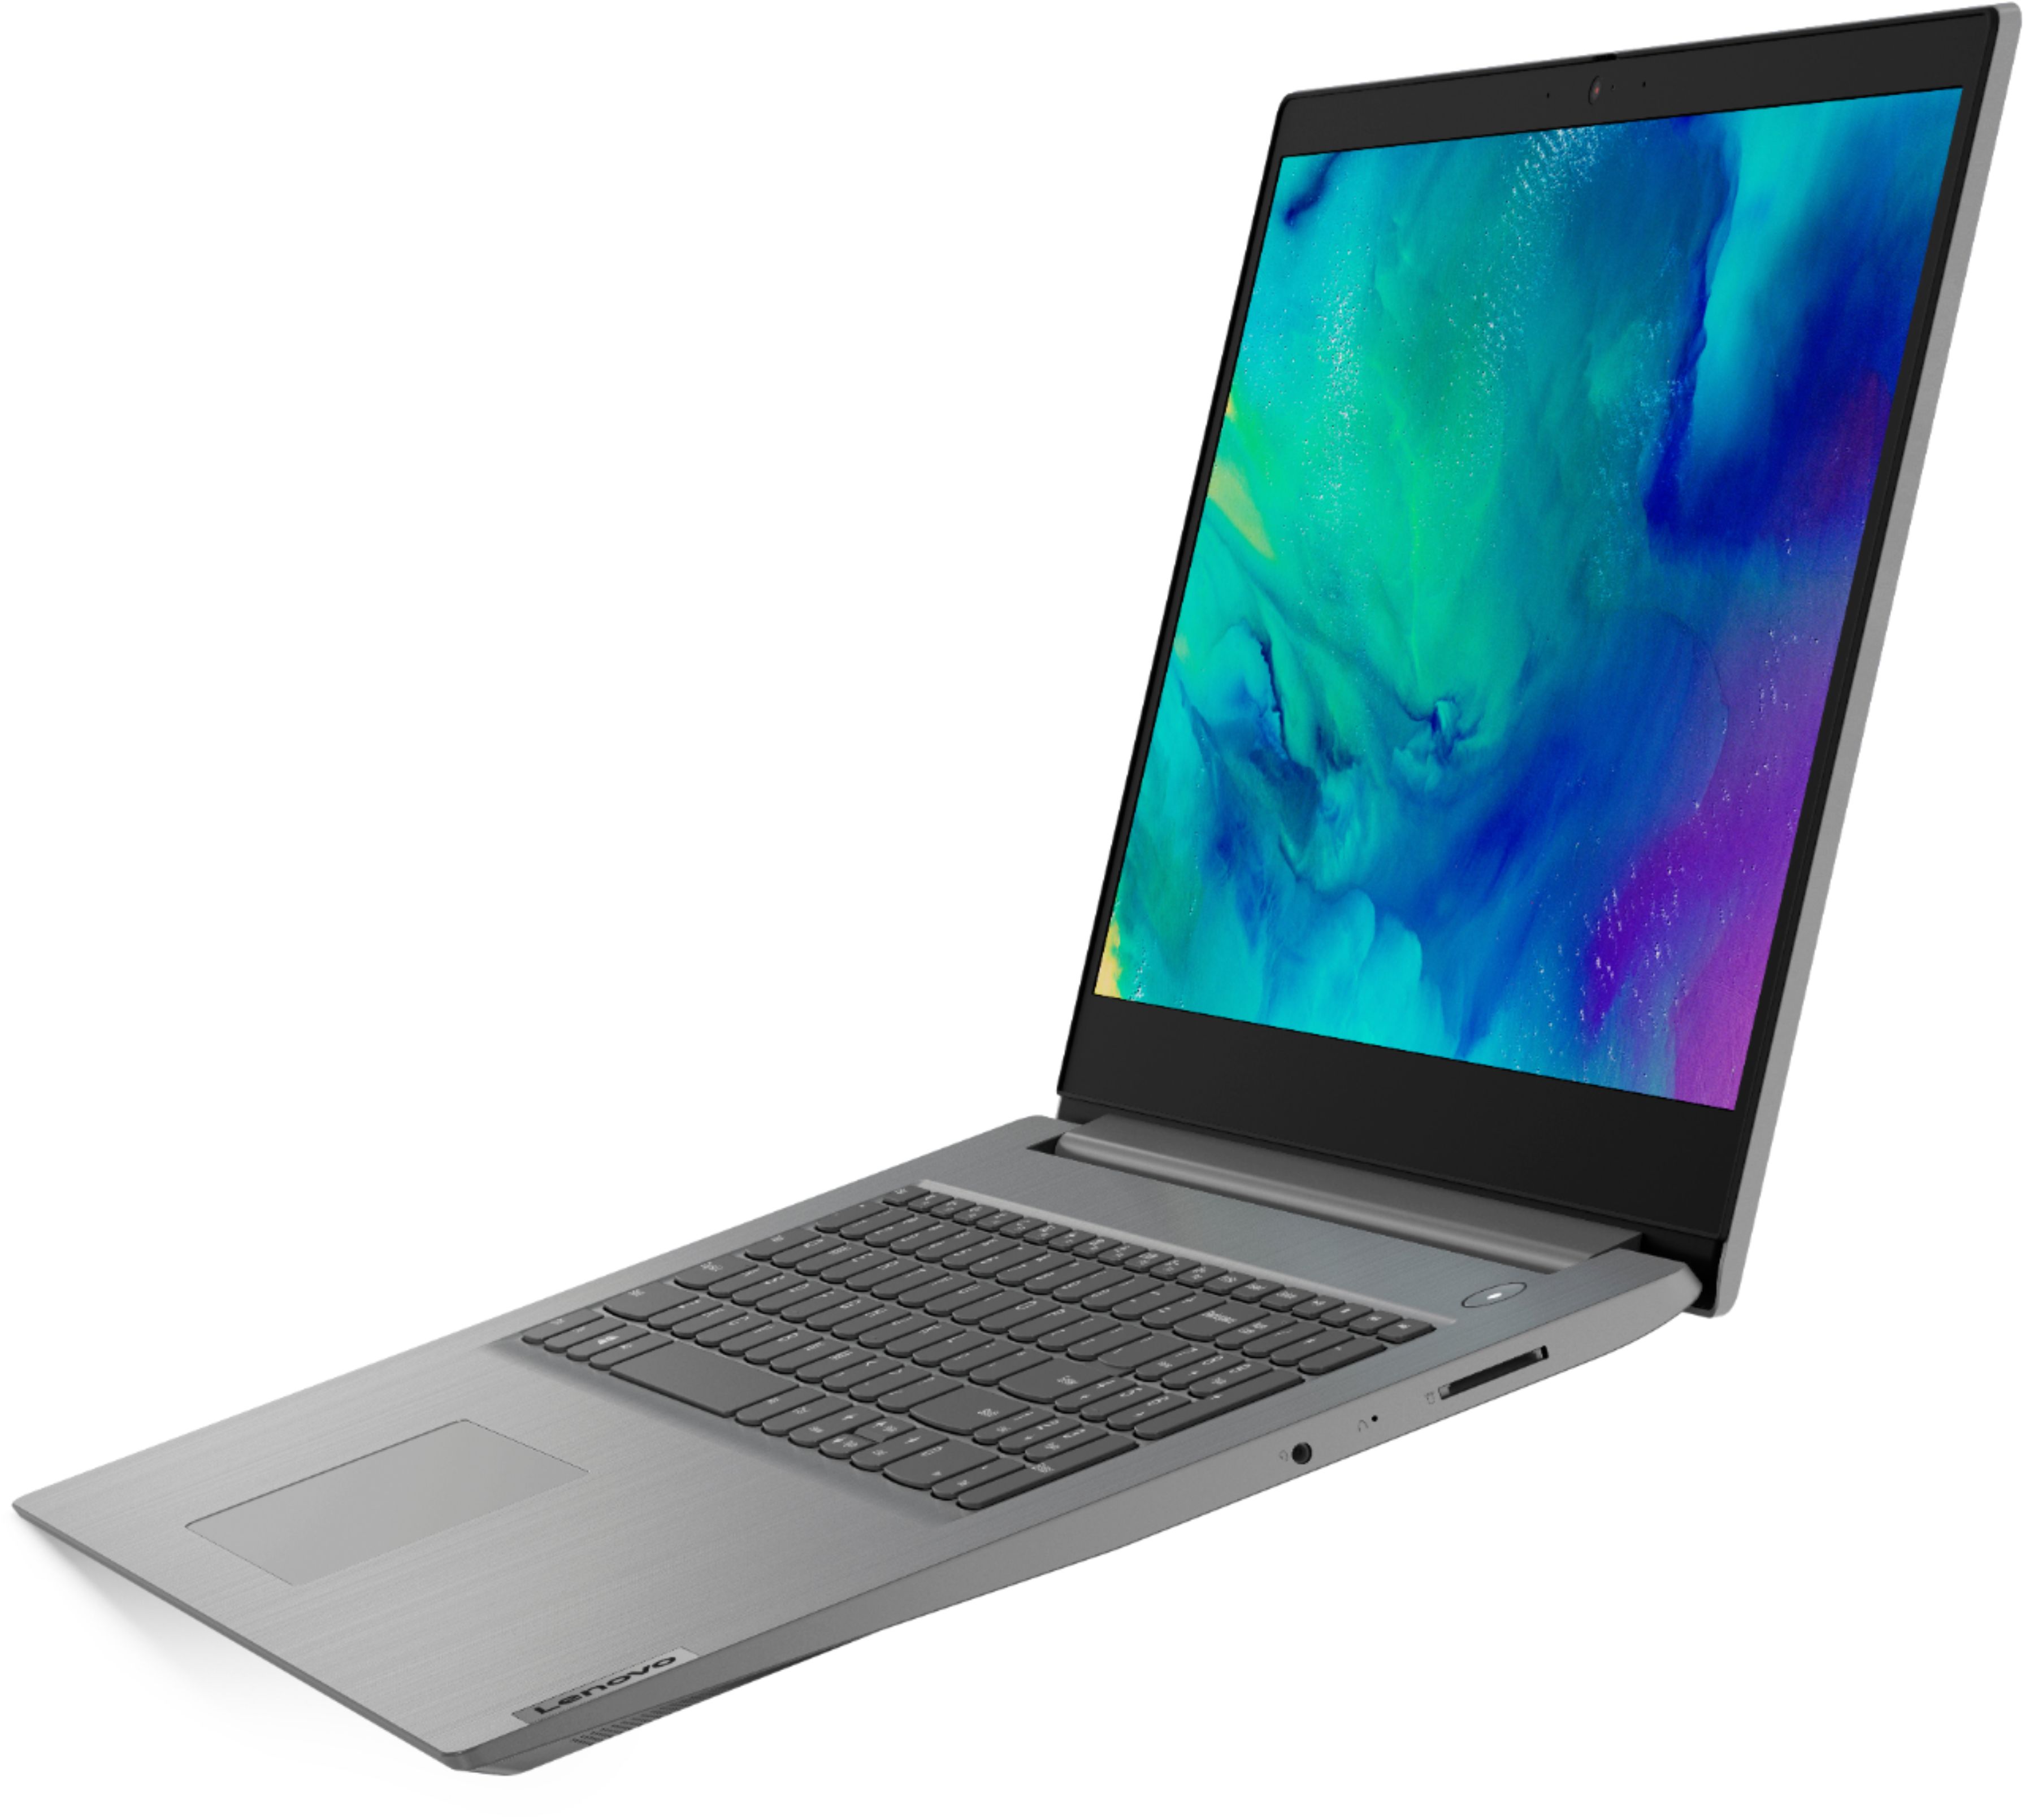 Gaming 3i Laptop Backpack 15.6 in for Lenovo IdeaPad 3 5 15s S540 S740 Slim 7